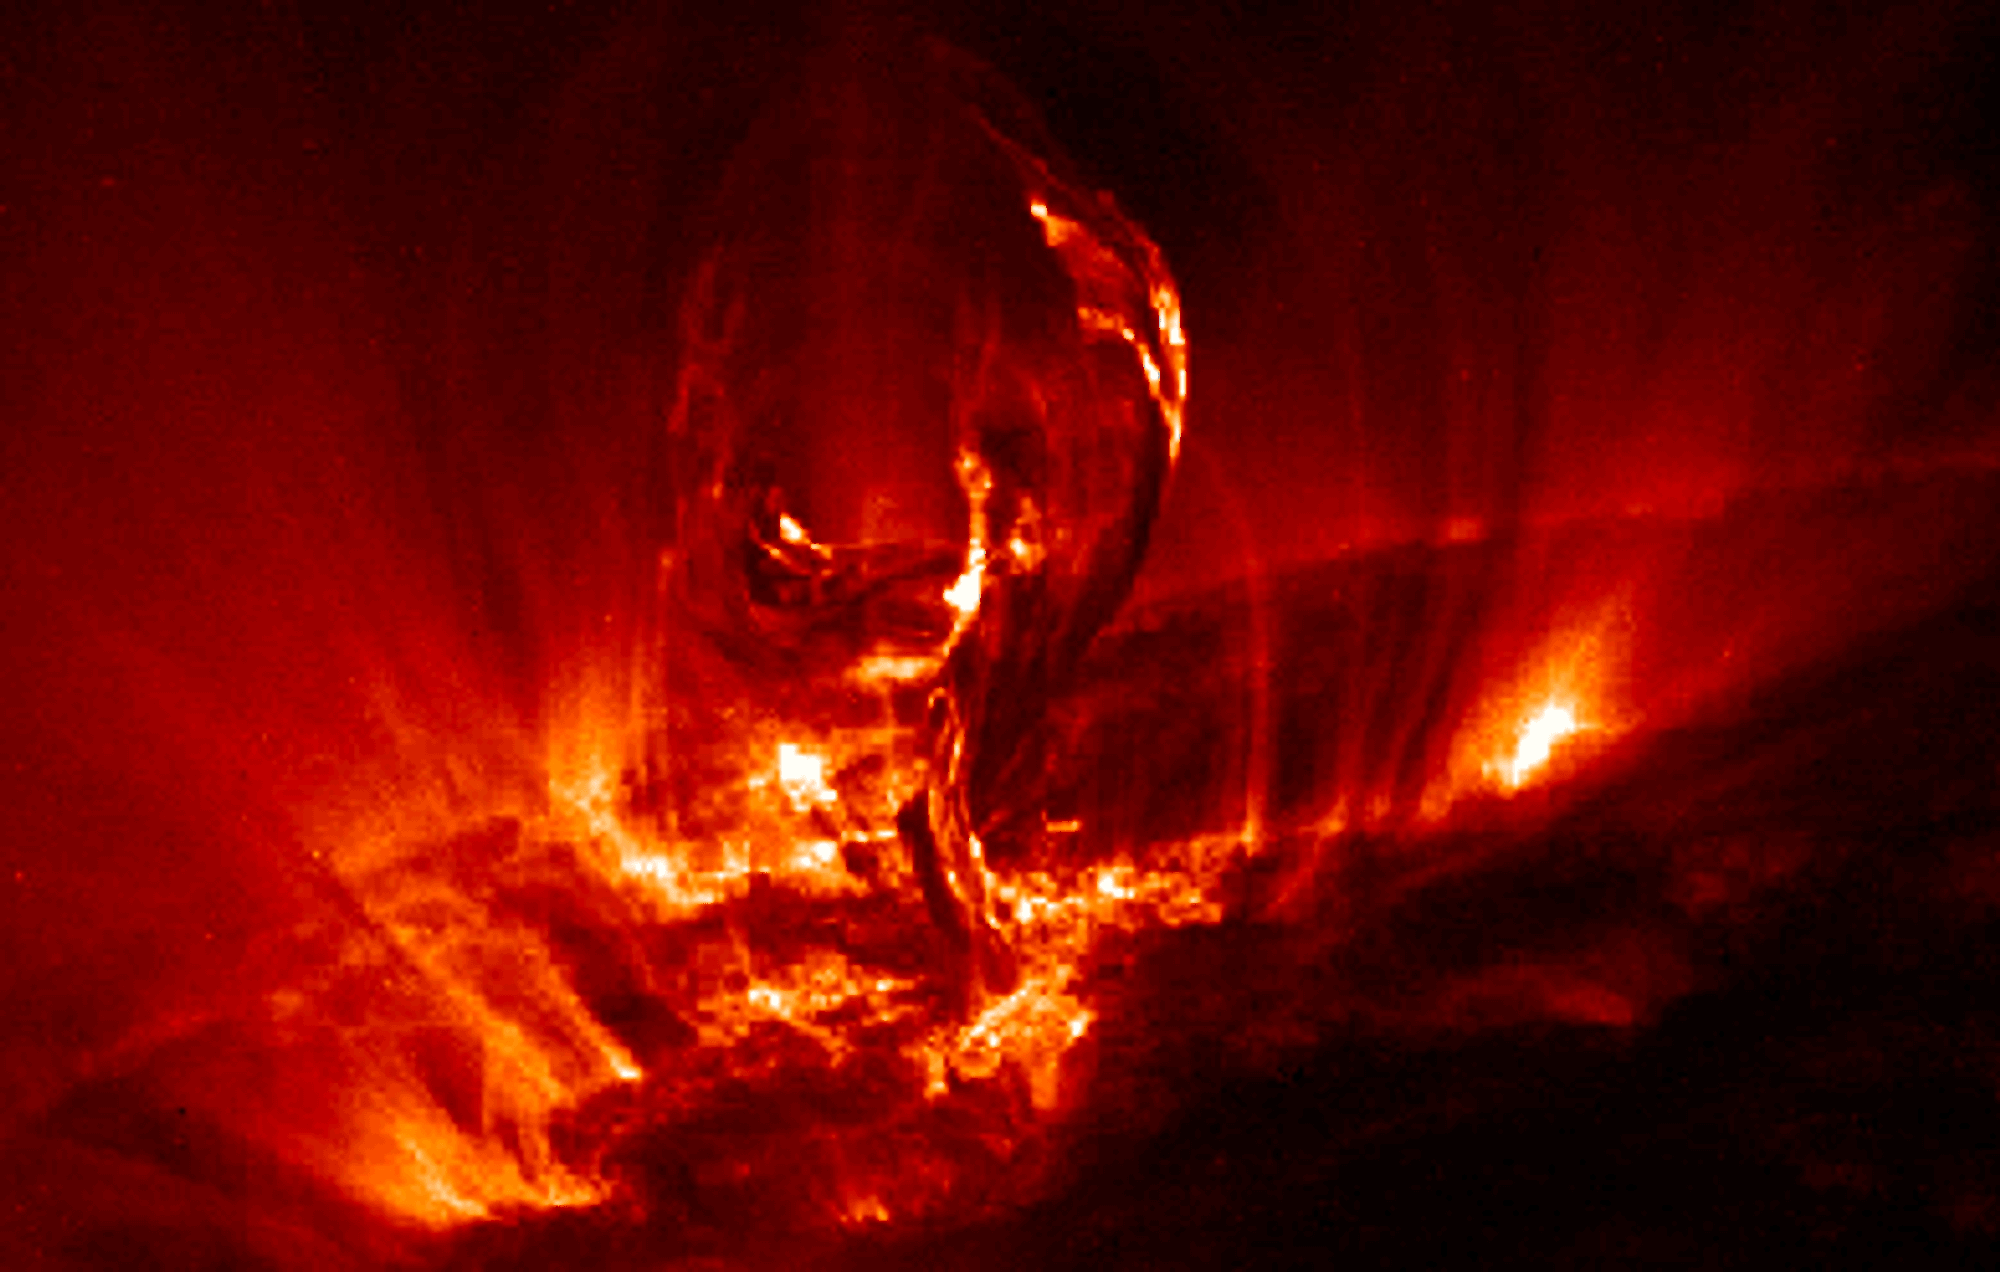 Såkalte solflares er en viktig årsak til temperatursvingninger på jorden. Her fotografert av NASA.